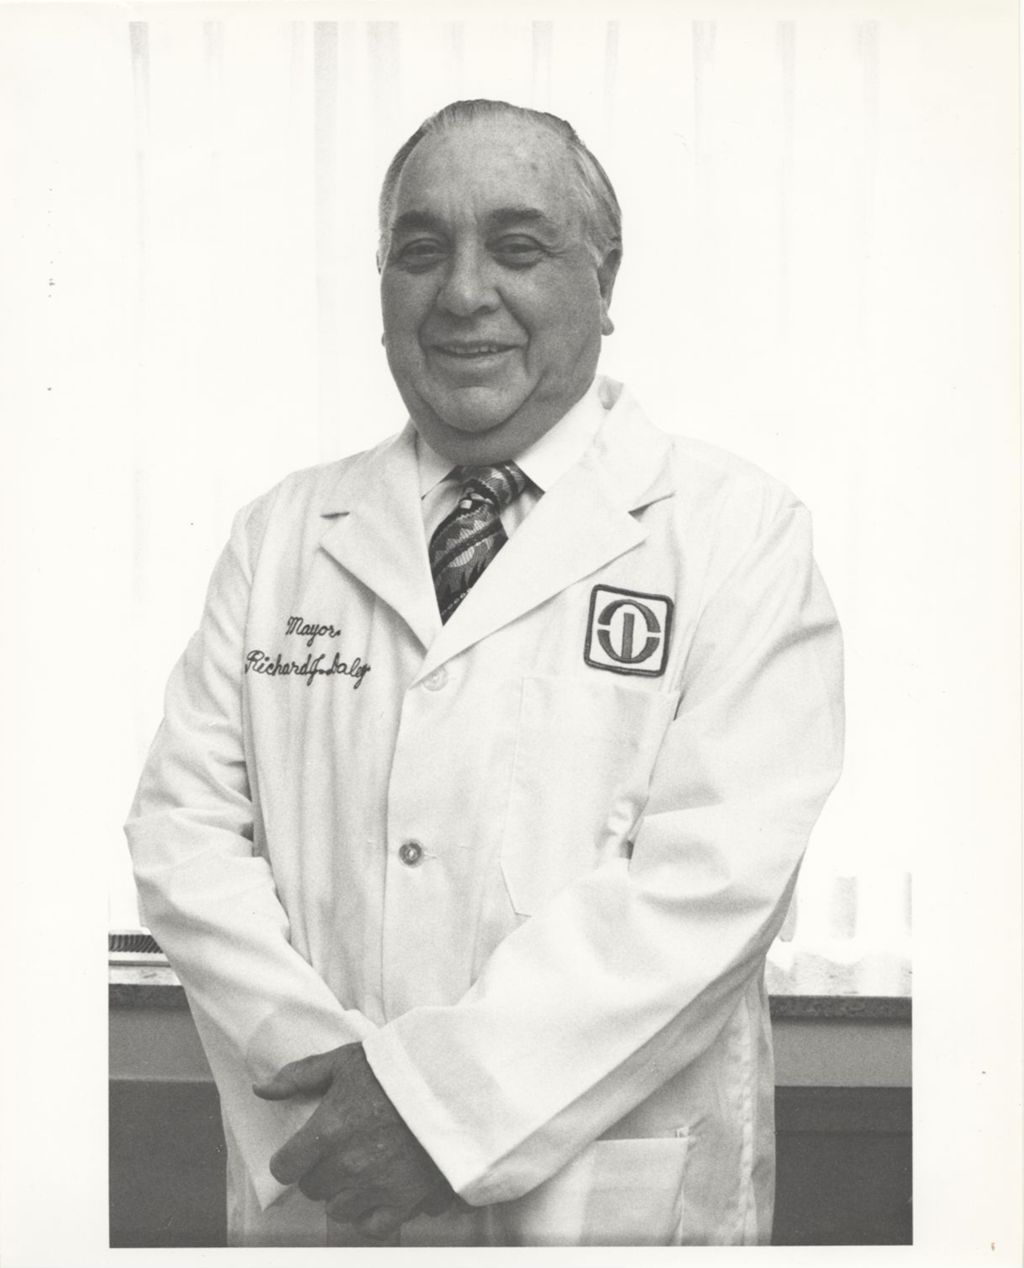 Richard J. Daley at Rush-Presbyterian-St. Luke's Medical Center